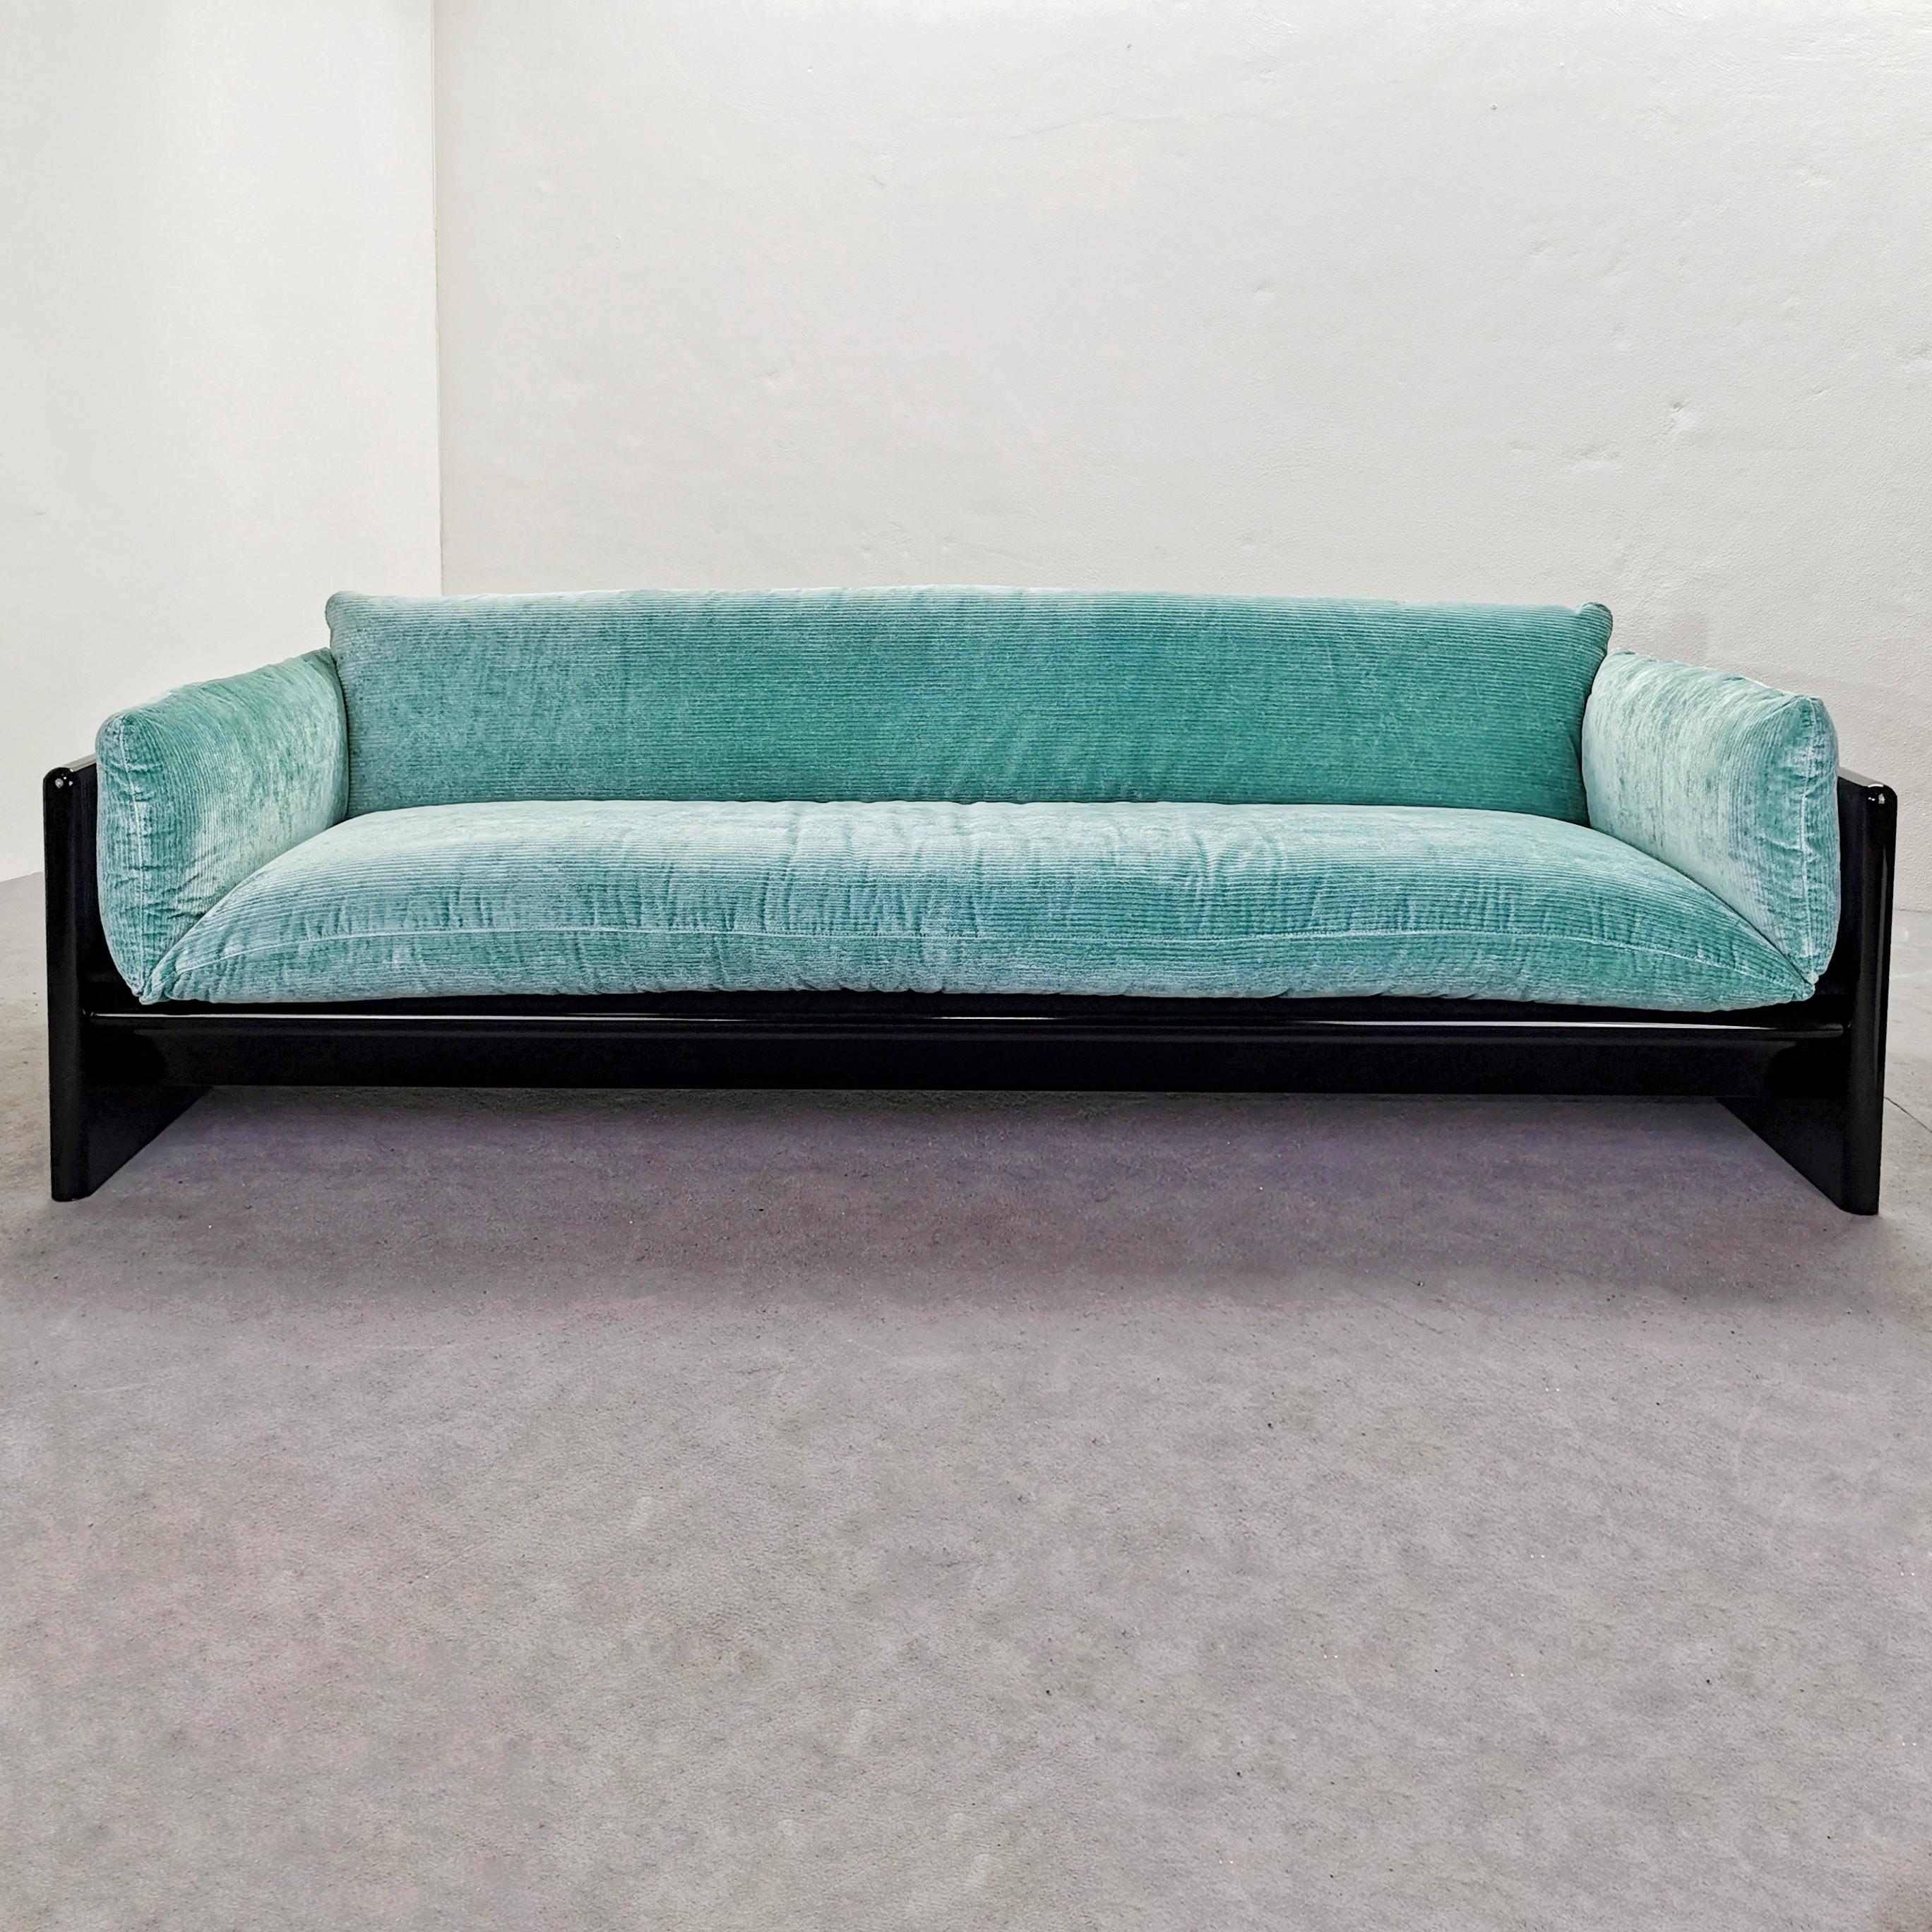 Elegantes Sofa 'Simone', entworfen von Dino Gavina für Studio Simon in den 1970er Jahren.
Die Struktur aus glänzend schwarz lackiertem Holz erlaubt es, ihn in der Mitte des Raumes mit einer sehr eleganten Rückseite zu positionieren 
die Kissen sind